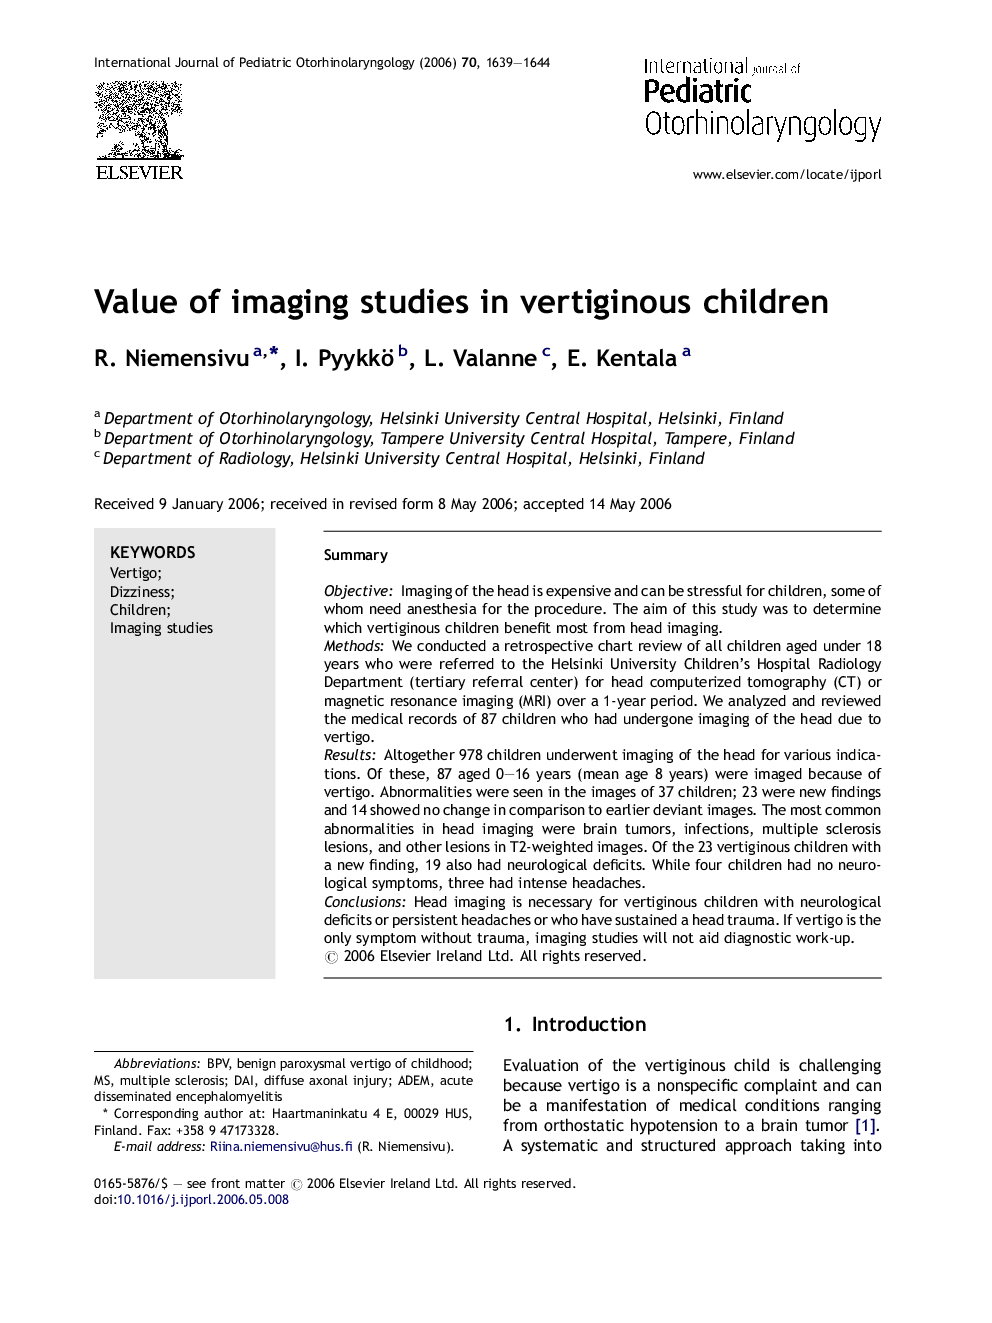 Value of imaging studies in vertiginous children